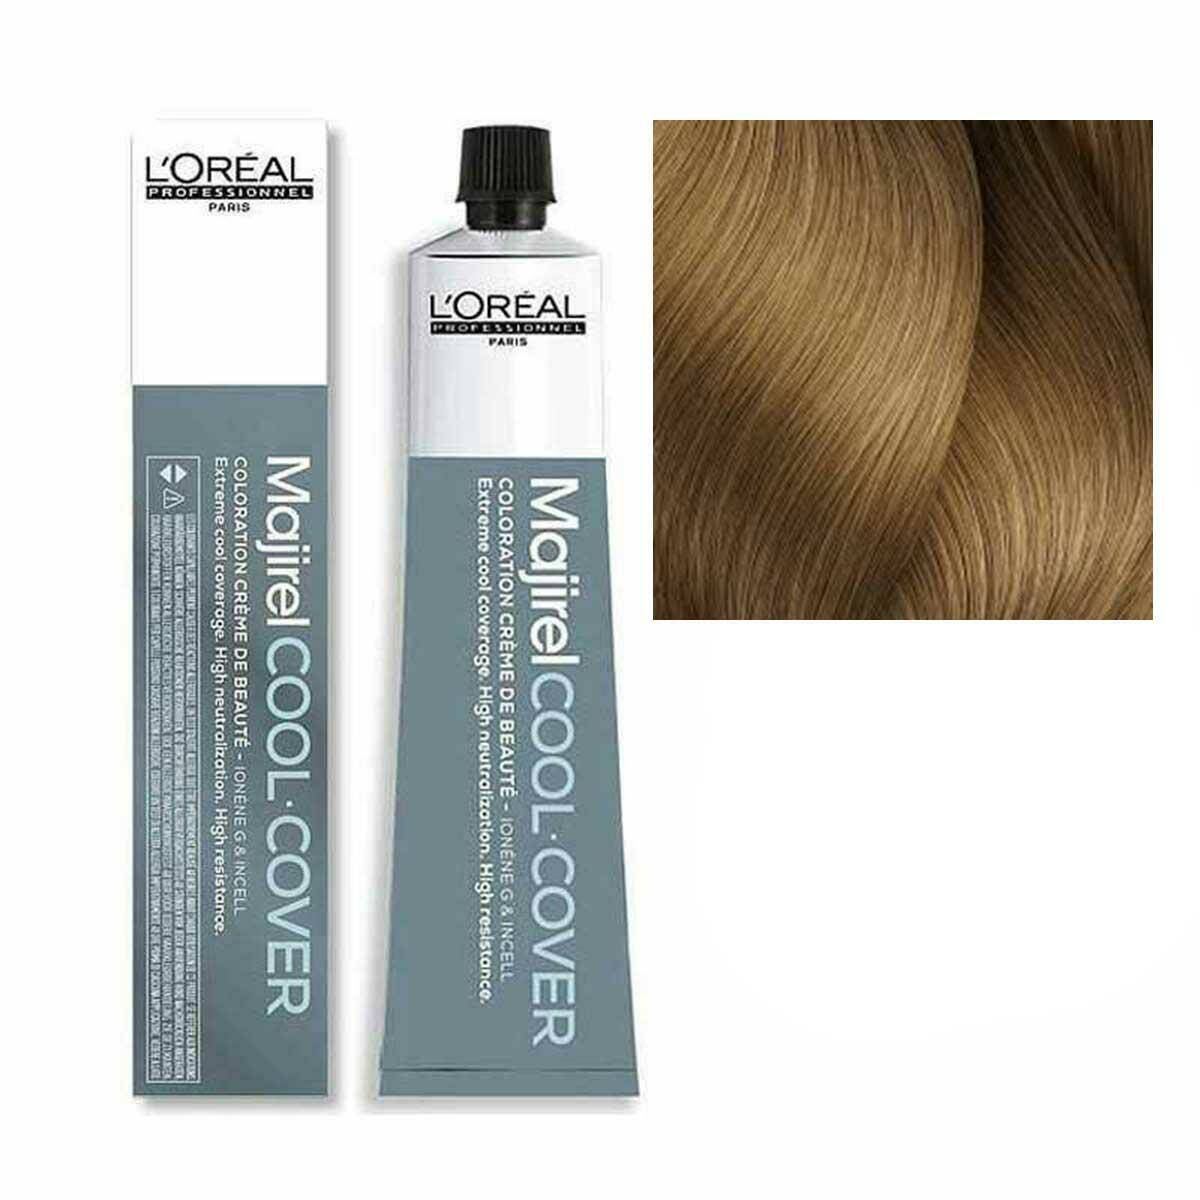 Loreal Majirel Cool Cover Farba do włosów - 8.3 Jasny blond złocisty, chłodne odcienie 50ml